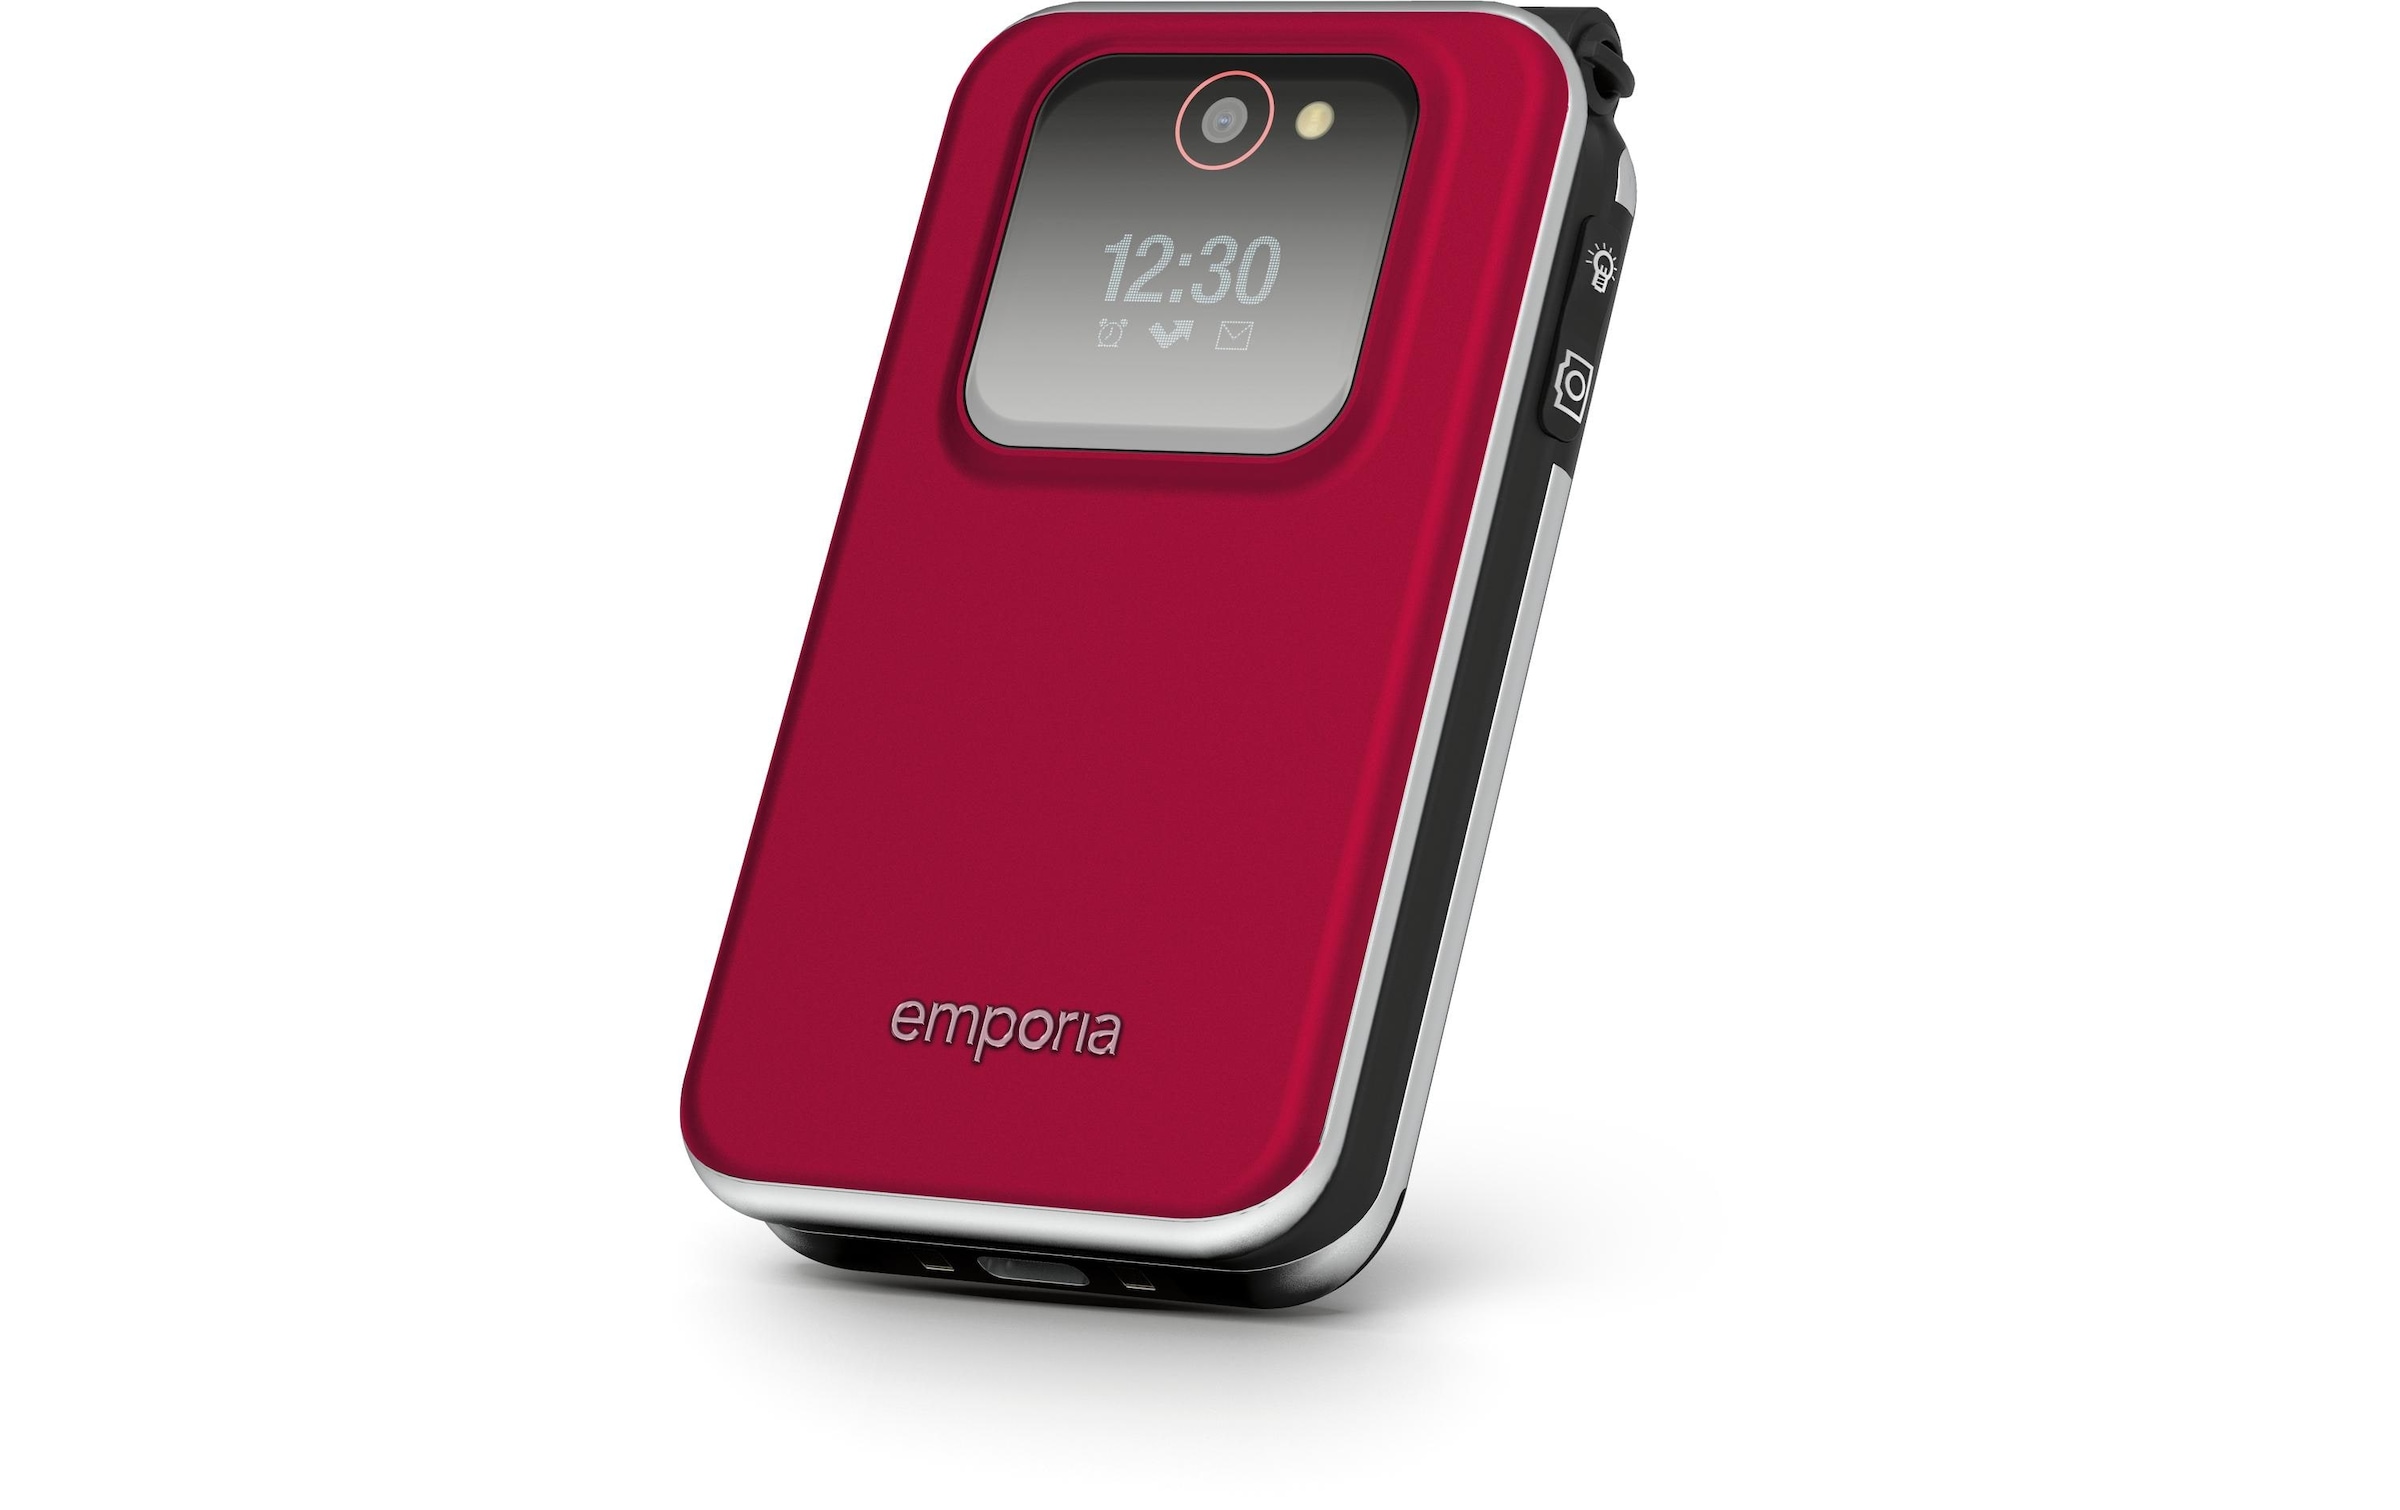 Emporia Seniorenhandy »JOY LTE V228«, Rot, 7,08 cm/2,8 Zoll, 18 GB Speicherplatz, 2 MP Kamera